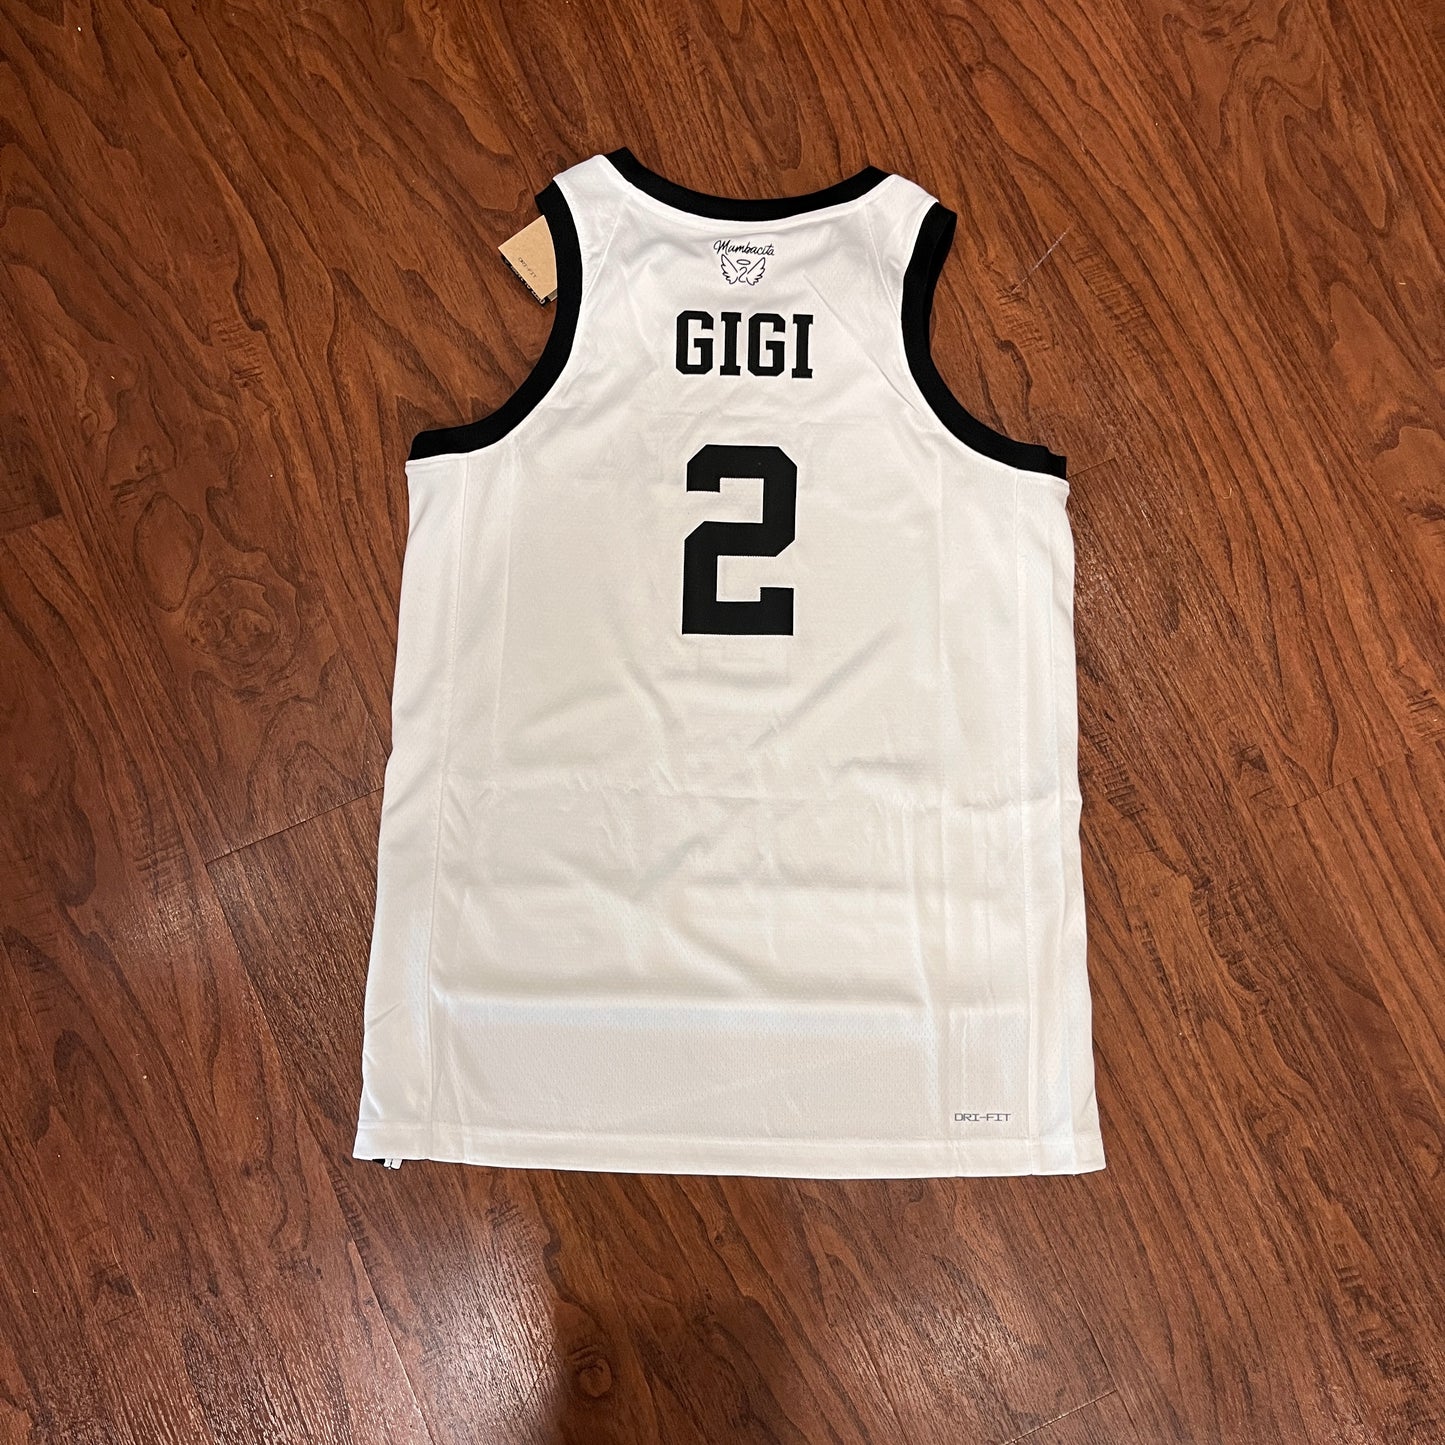 Nike MAMBA Gigi Jersey White